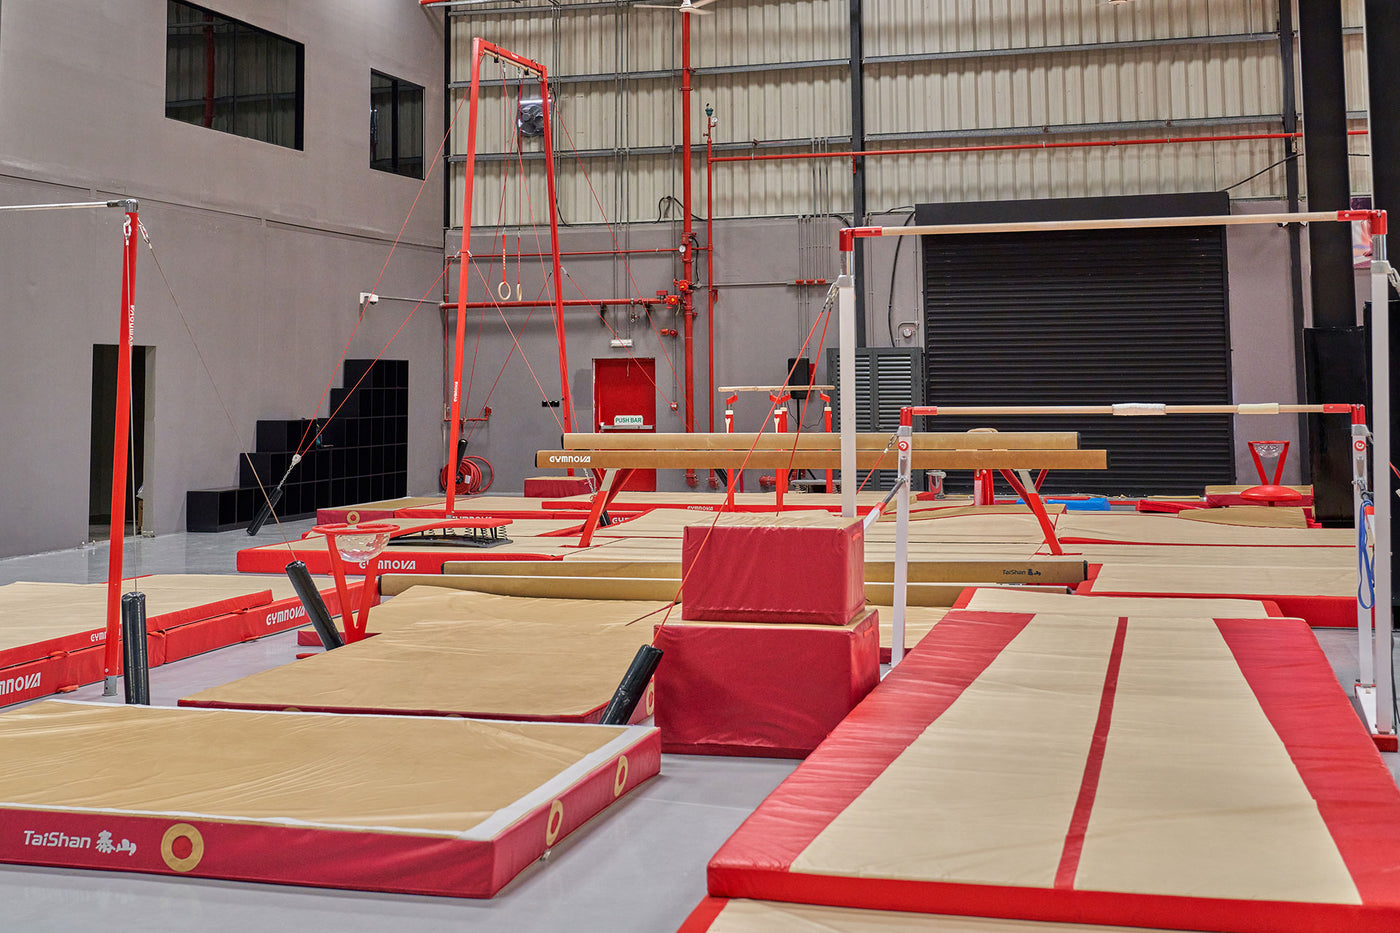 Gymnastics Image 4 - Level Up Gyms